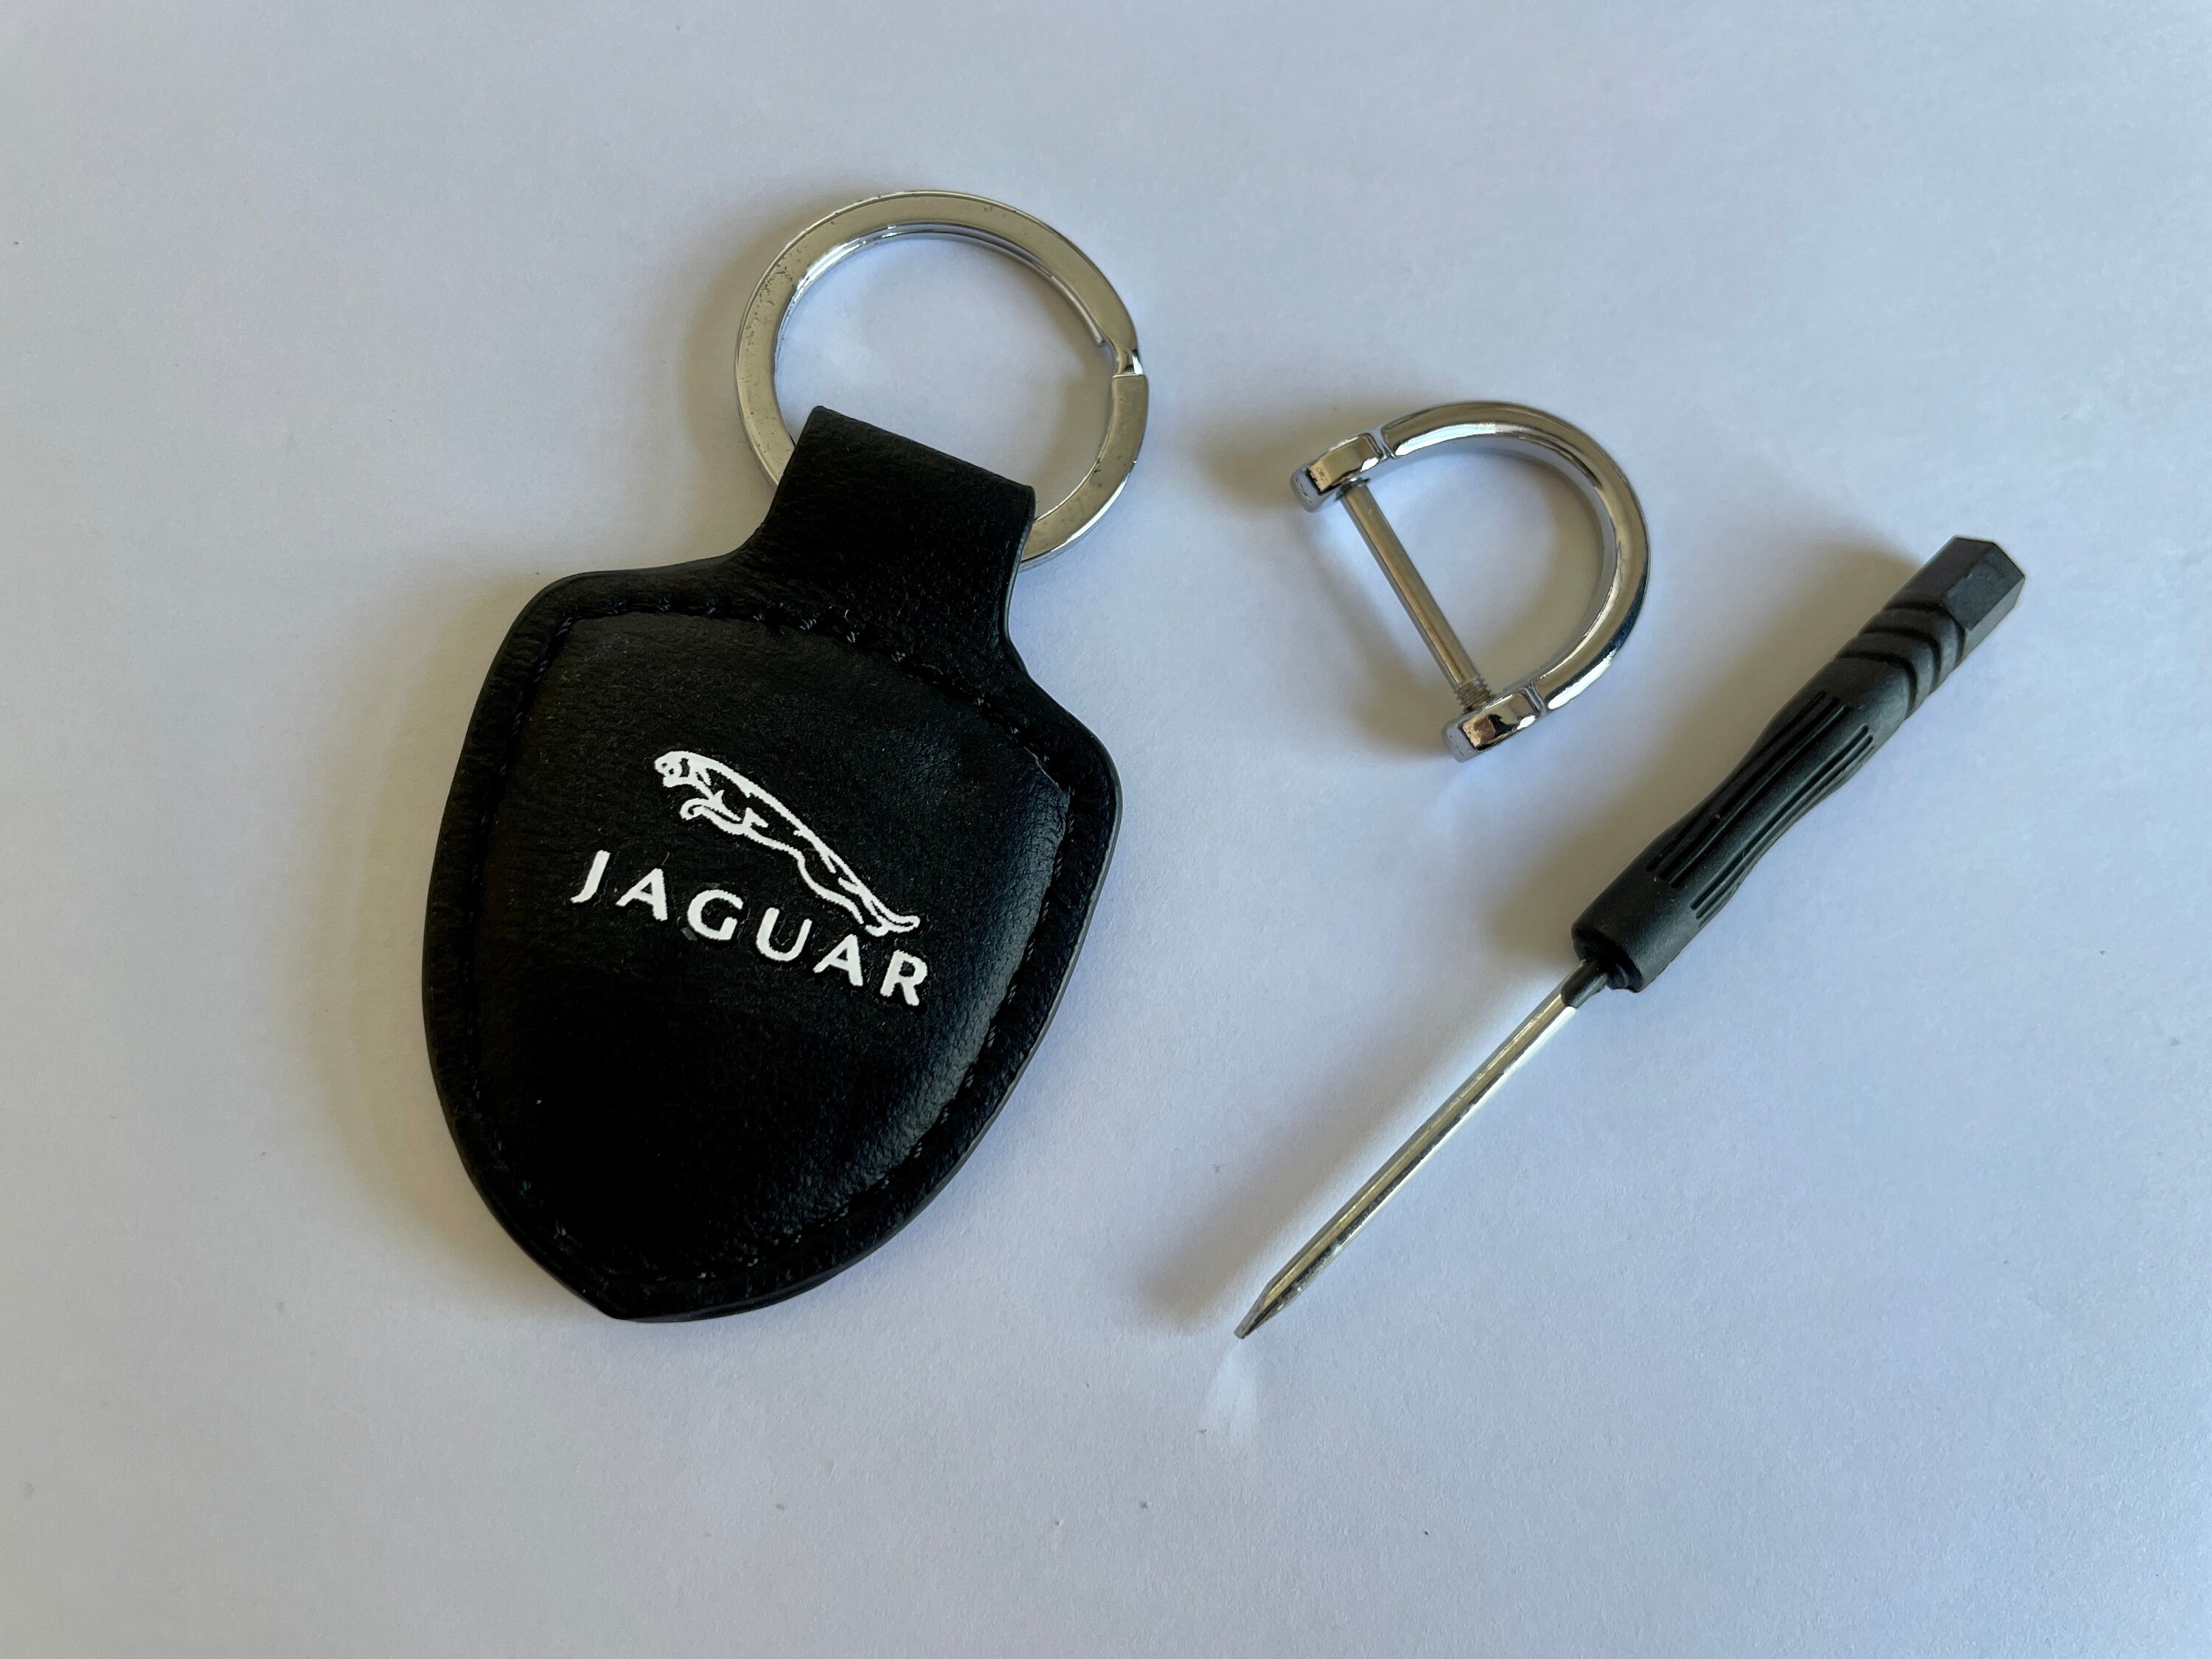 Jaguar Accessories Etsy UK